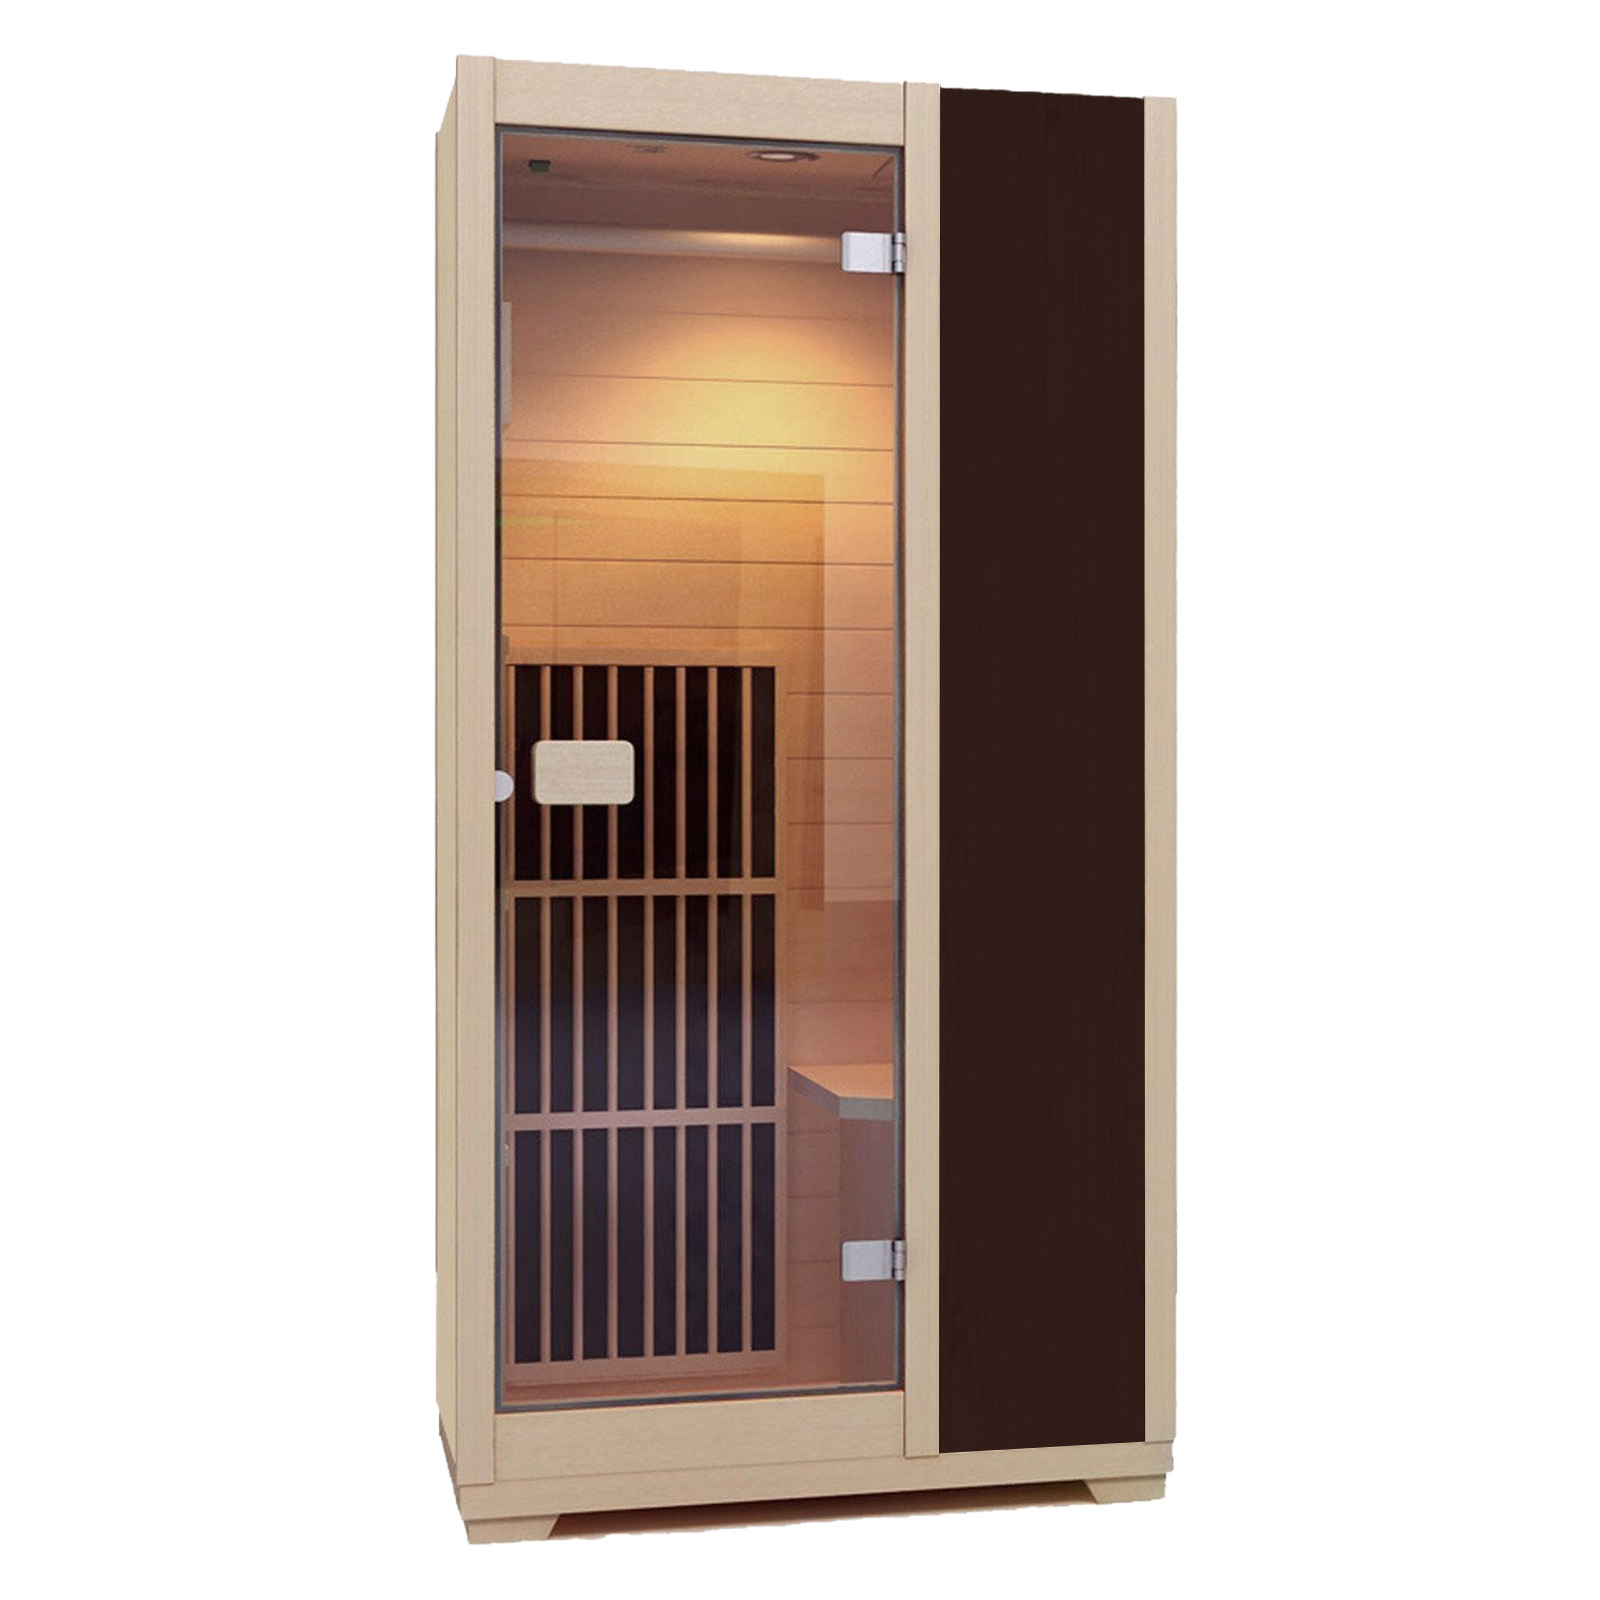 Zen Ferninfrarot-Sauna für 1 Person - Braun